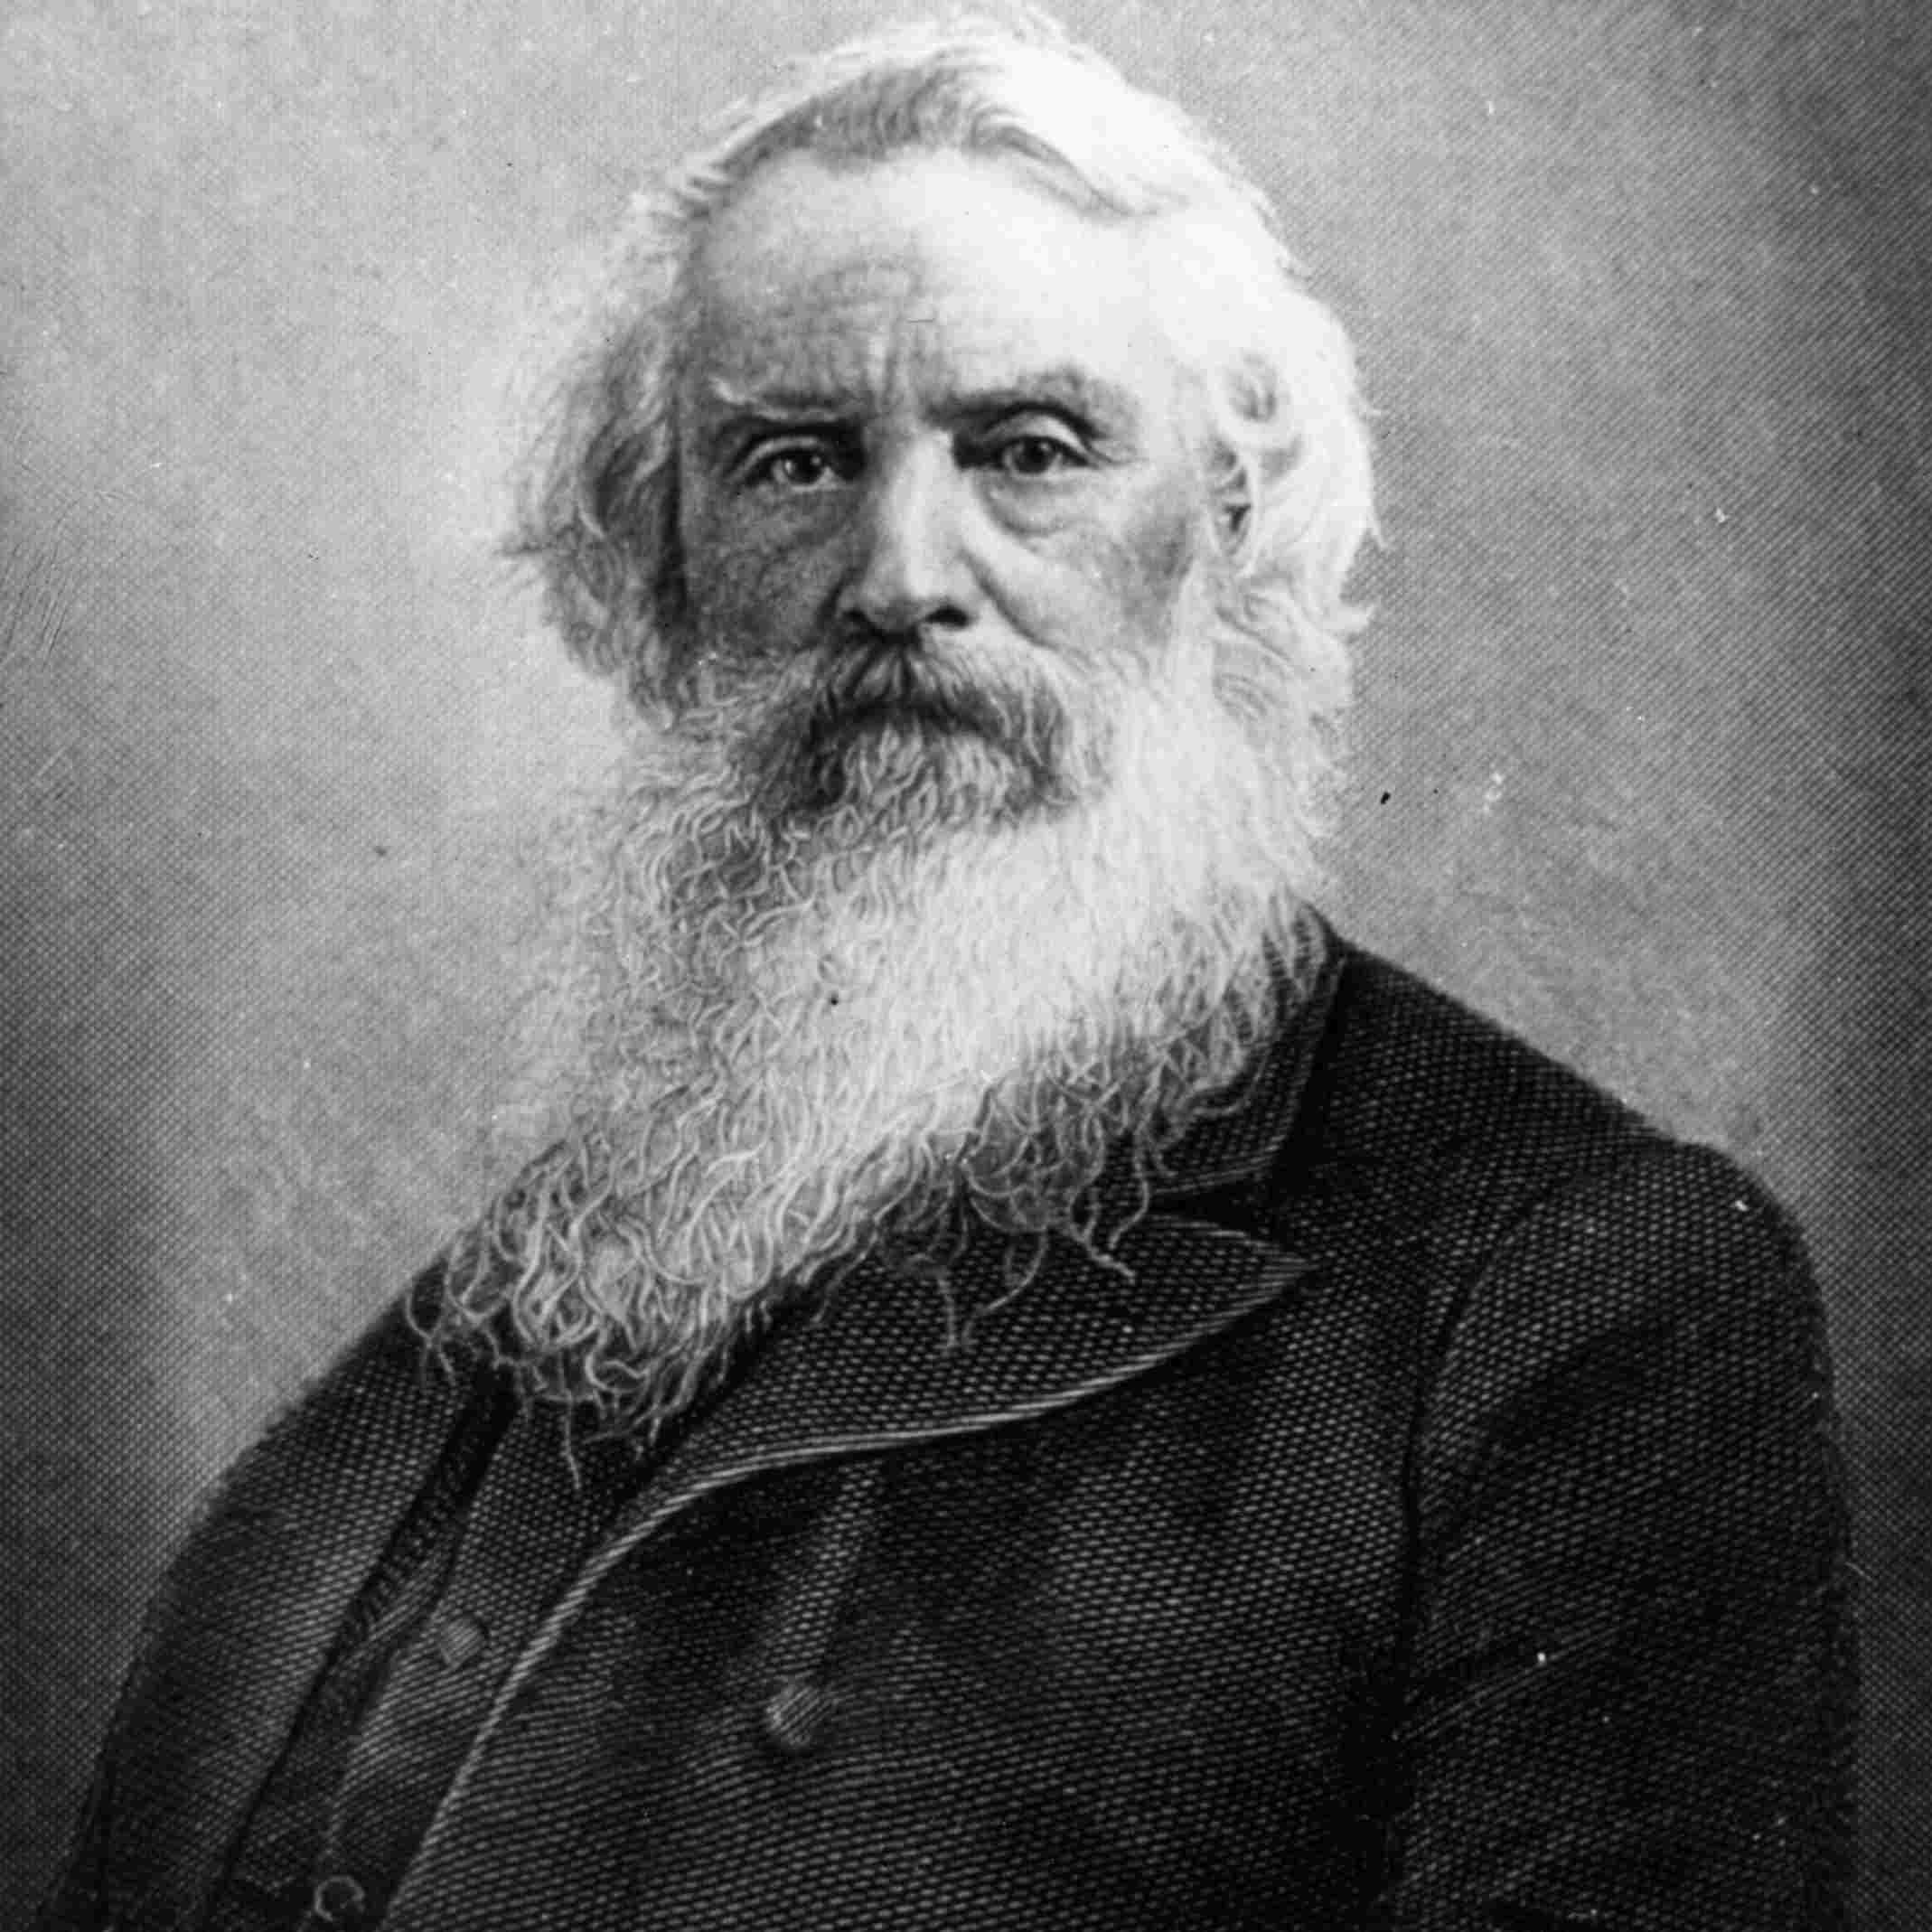 khoảng năm 1865: Samuel Finley Breese Morse (1791 - 1872), nhà phát minh và nghệ sĩ người Mỹ.